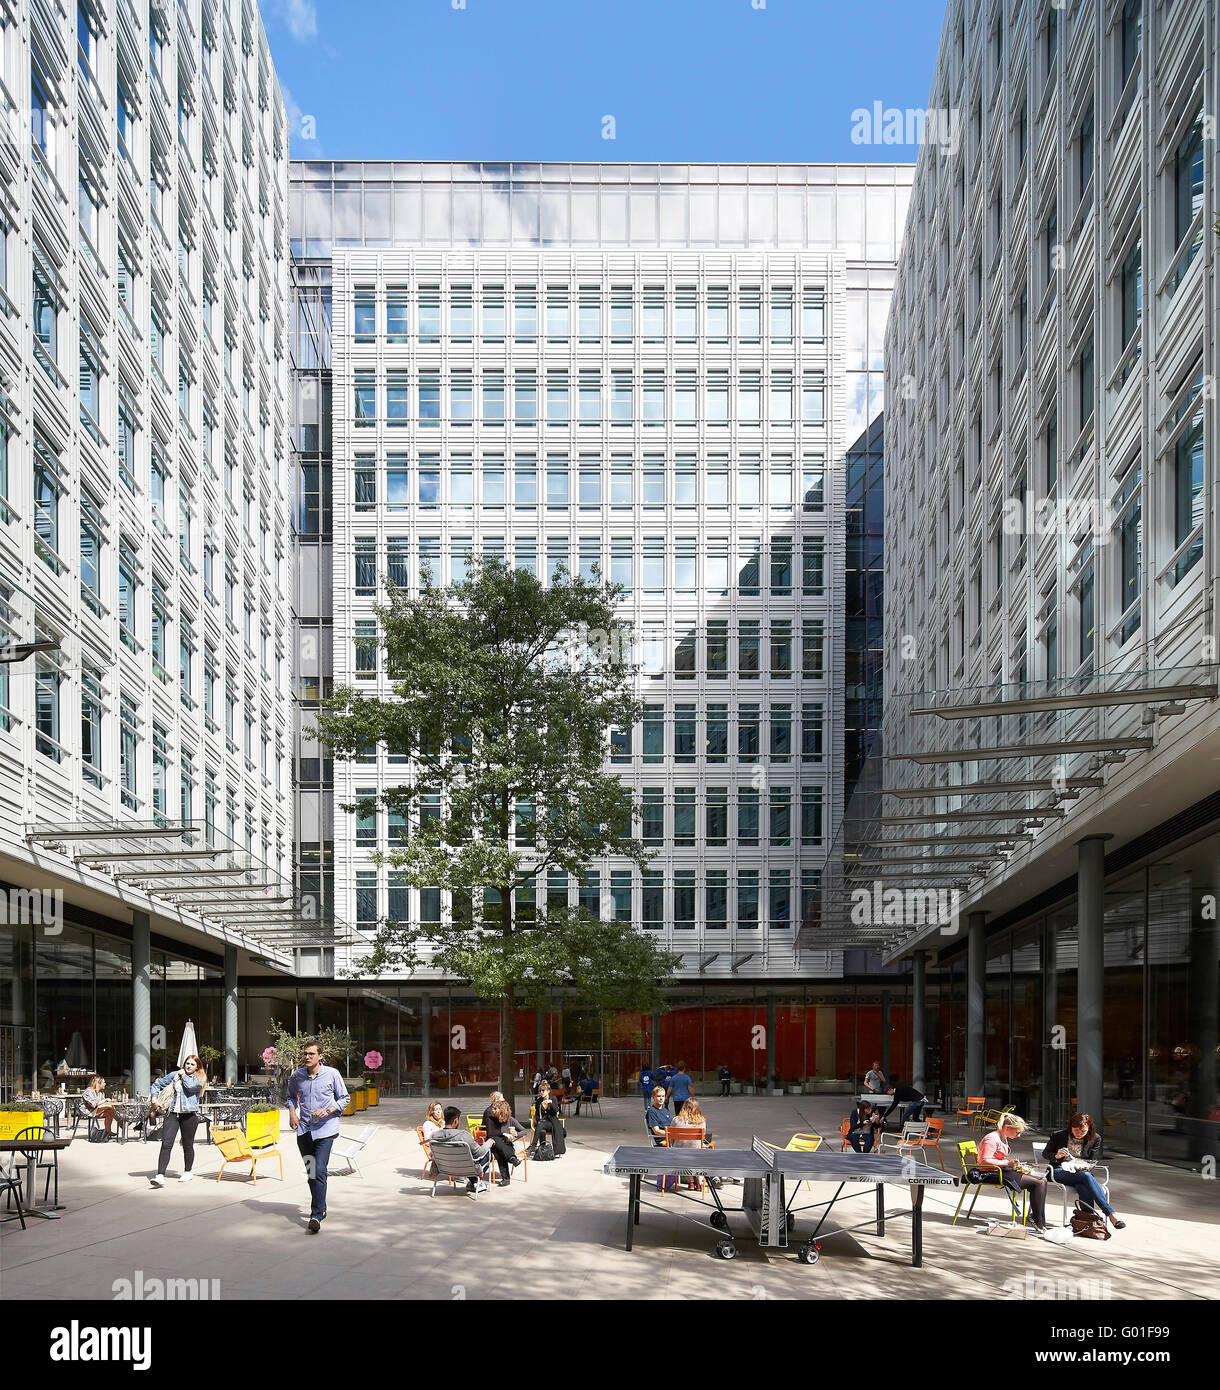 Öffentlichen Innenhof mit informellen Sitzgelegenheiten und Freizeit-Bereich. Central Saint Giles, London, Vereinigtes Königreich. Architekt: Renzo Piano Building Workshop, 2015. Stockfoto